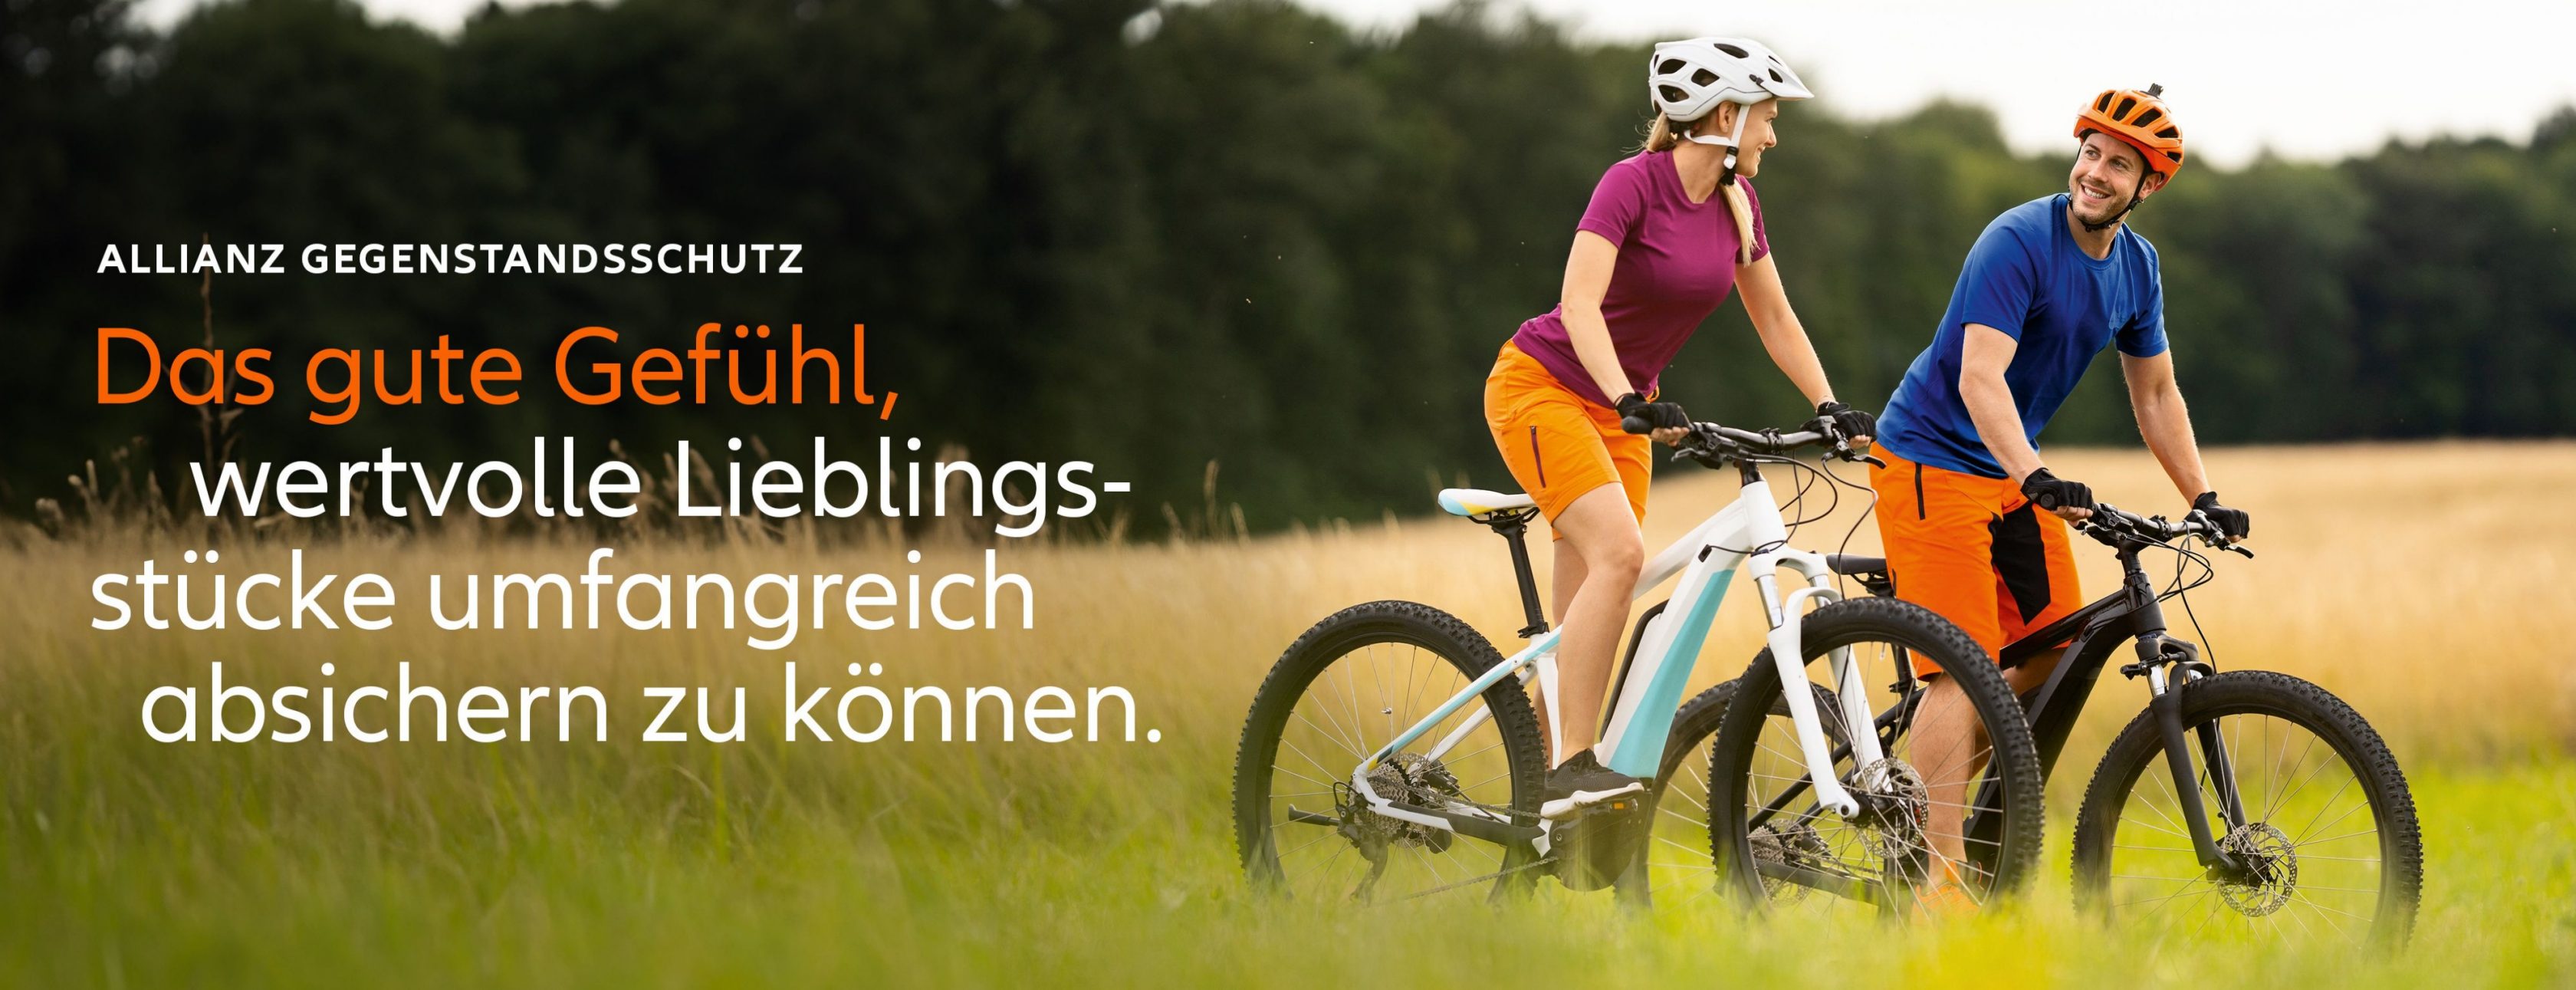 Allianz Versicherung Stefan Rödler Sinsheim - Agentur Rödler E-Bike Gegenstandsschutz Sinsheim